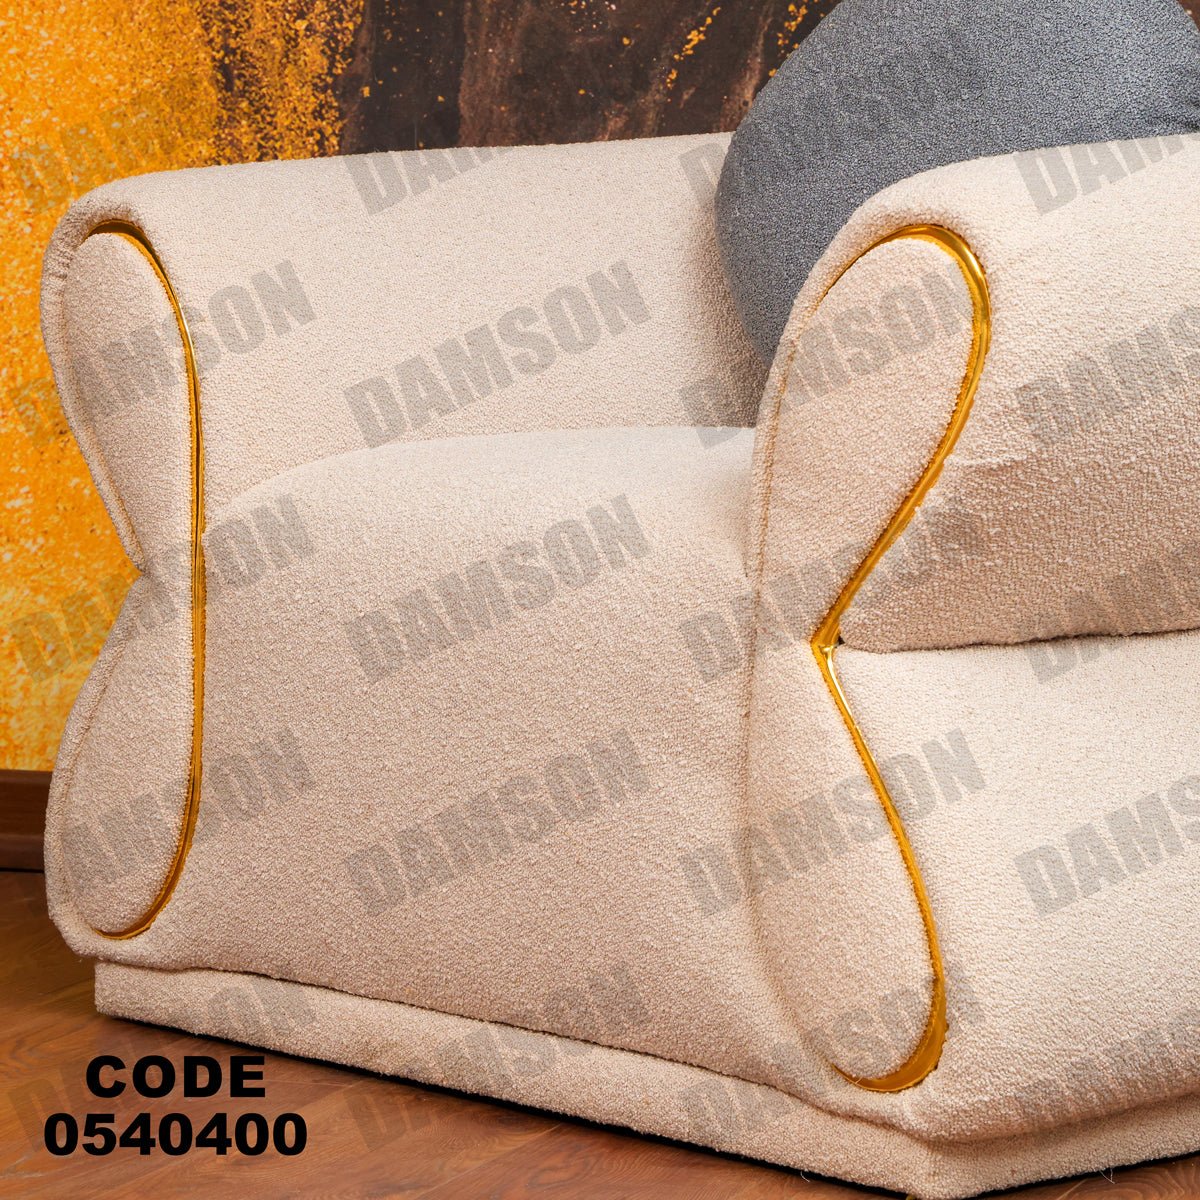 فوتية 1-404 - Damson Furnitureفوتية 1-404